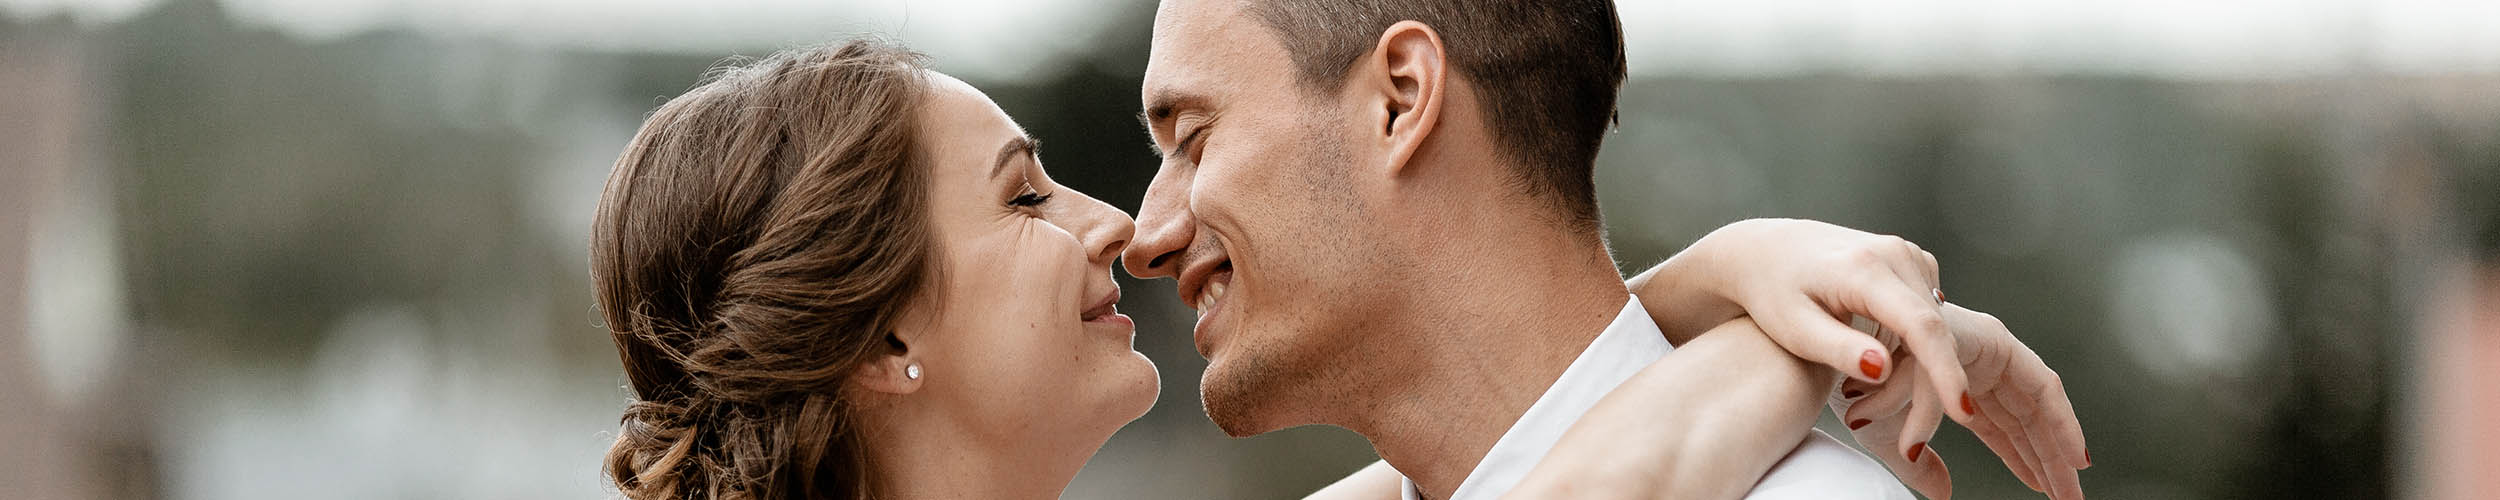 glückliches paar kuss hochzeitsfotograf wien kosten preis